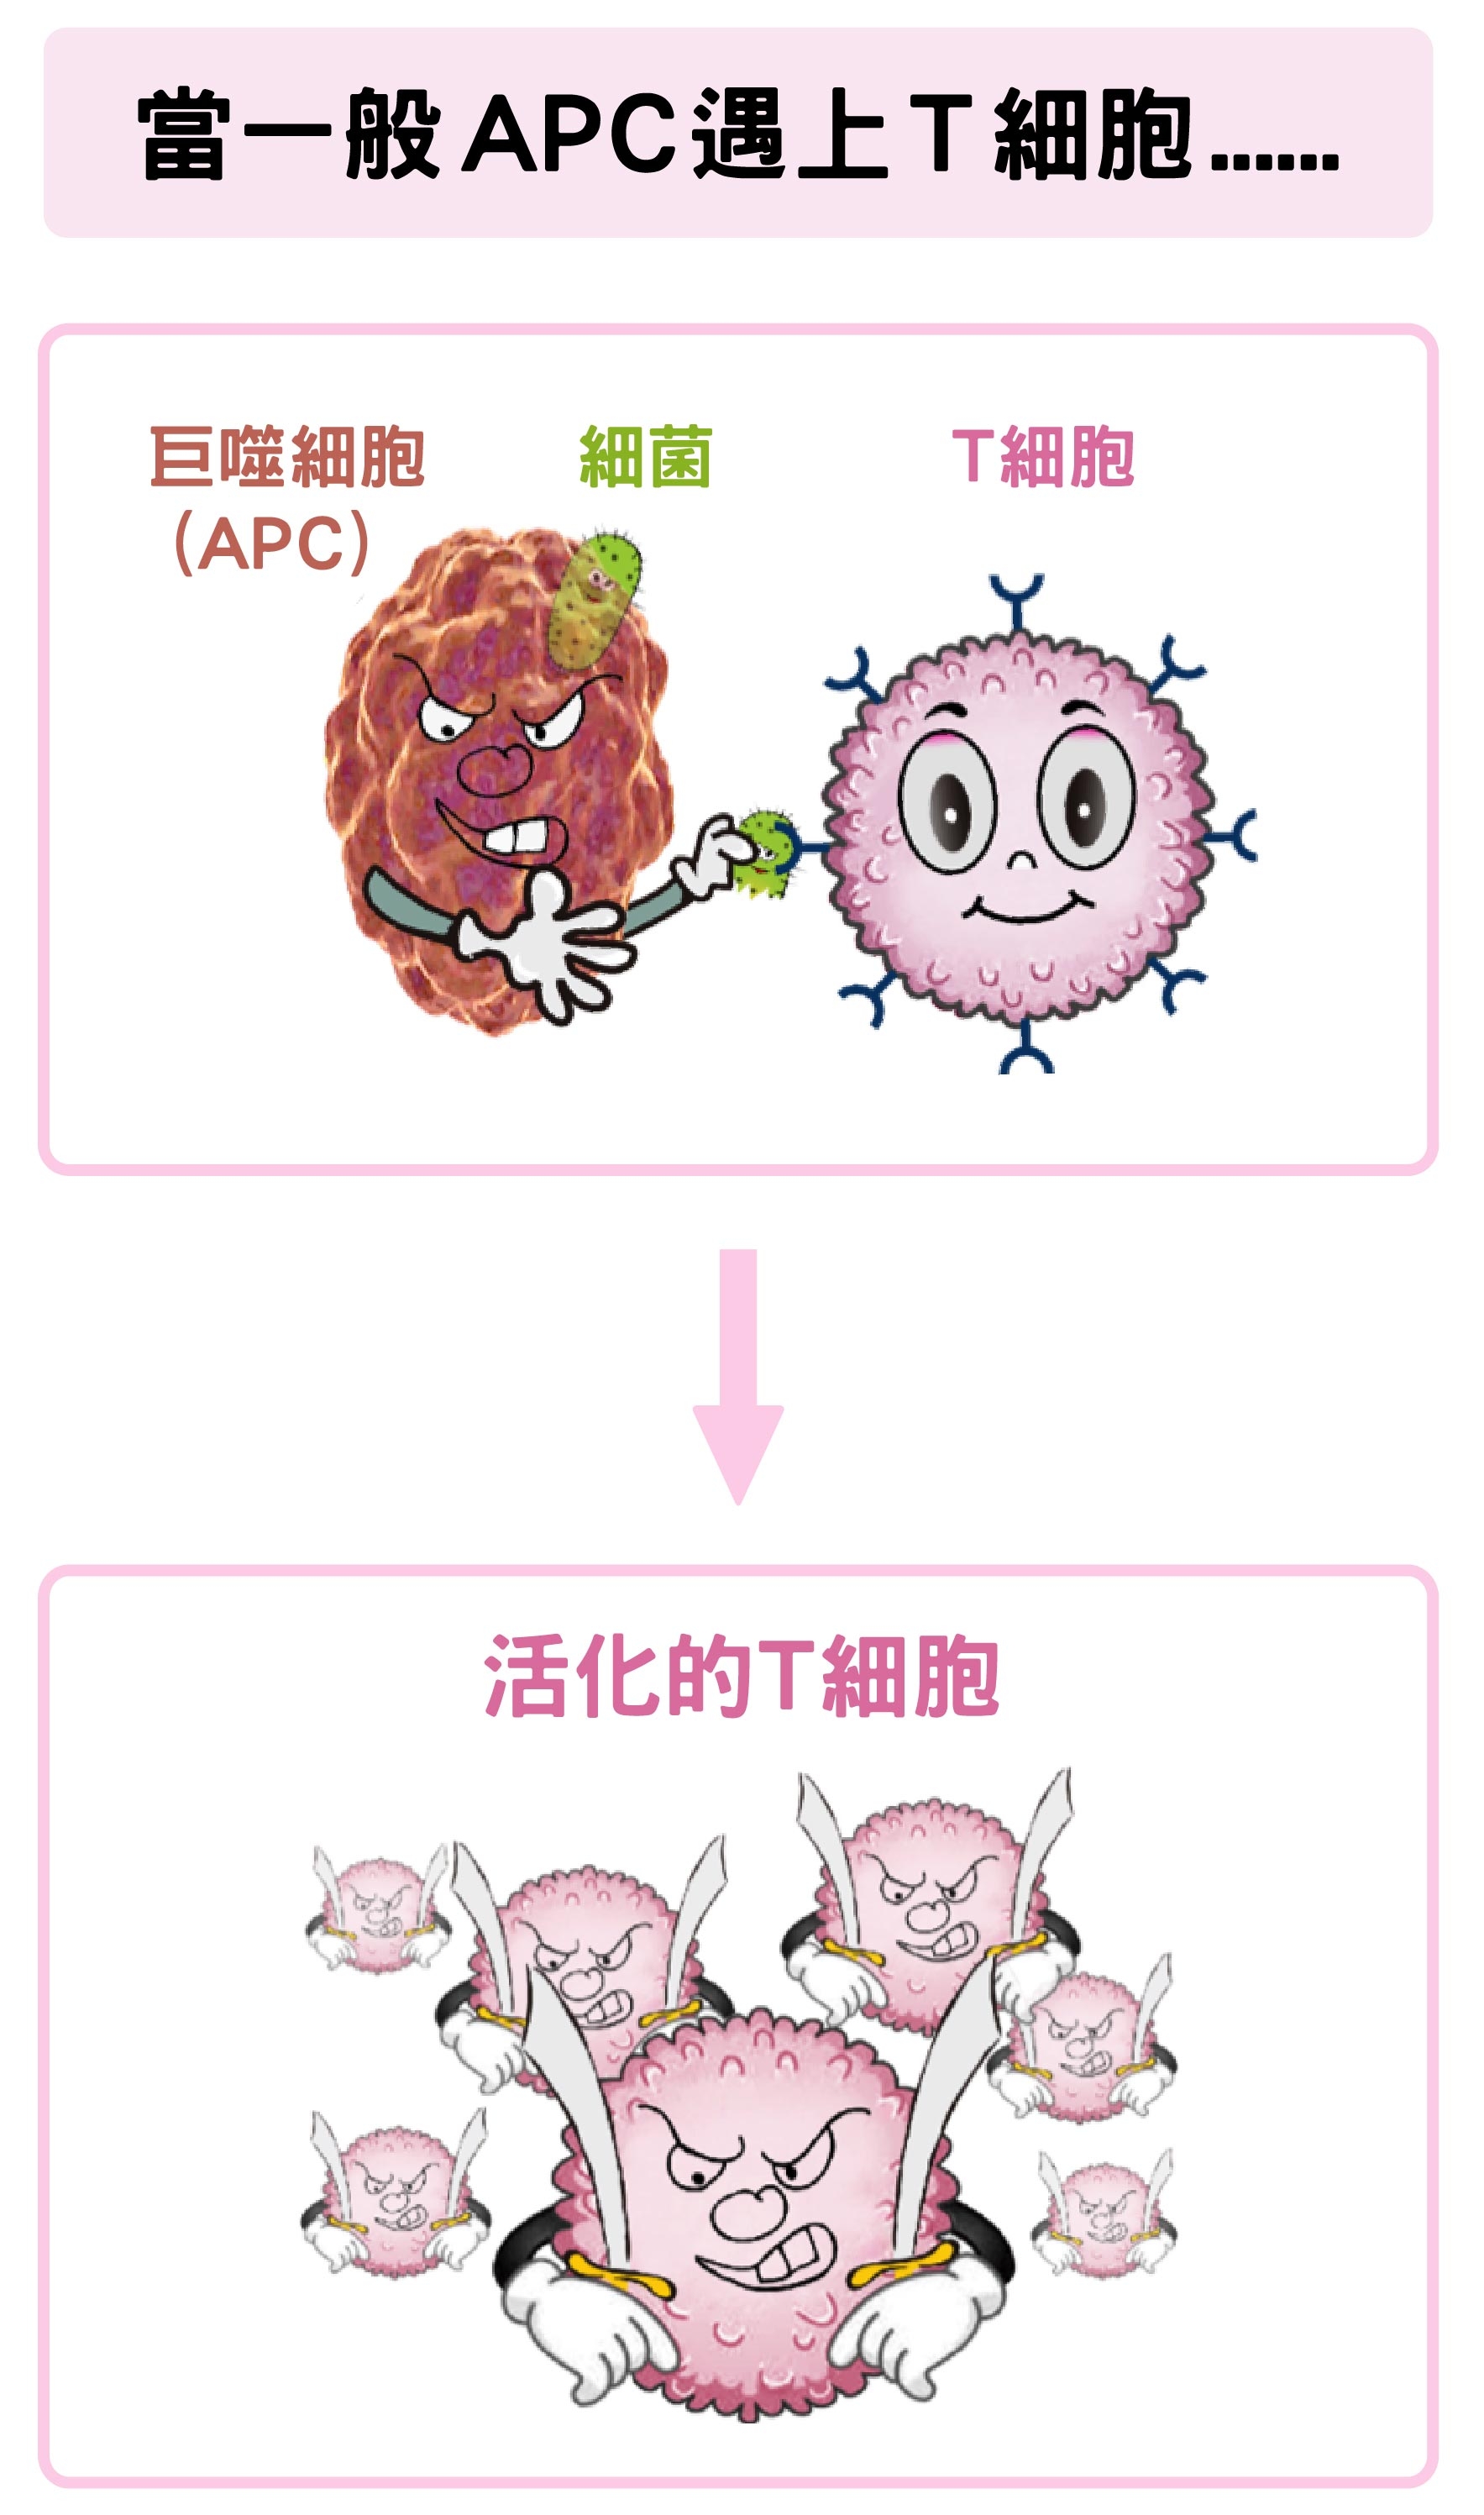 巨噬細胞（APC）吞噬細菌後，可活化Ｔ細胞。 <br>資料來源│陶秘華 圖說原作│張峰碧 <br>圖說美化│林洵安 